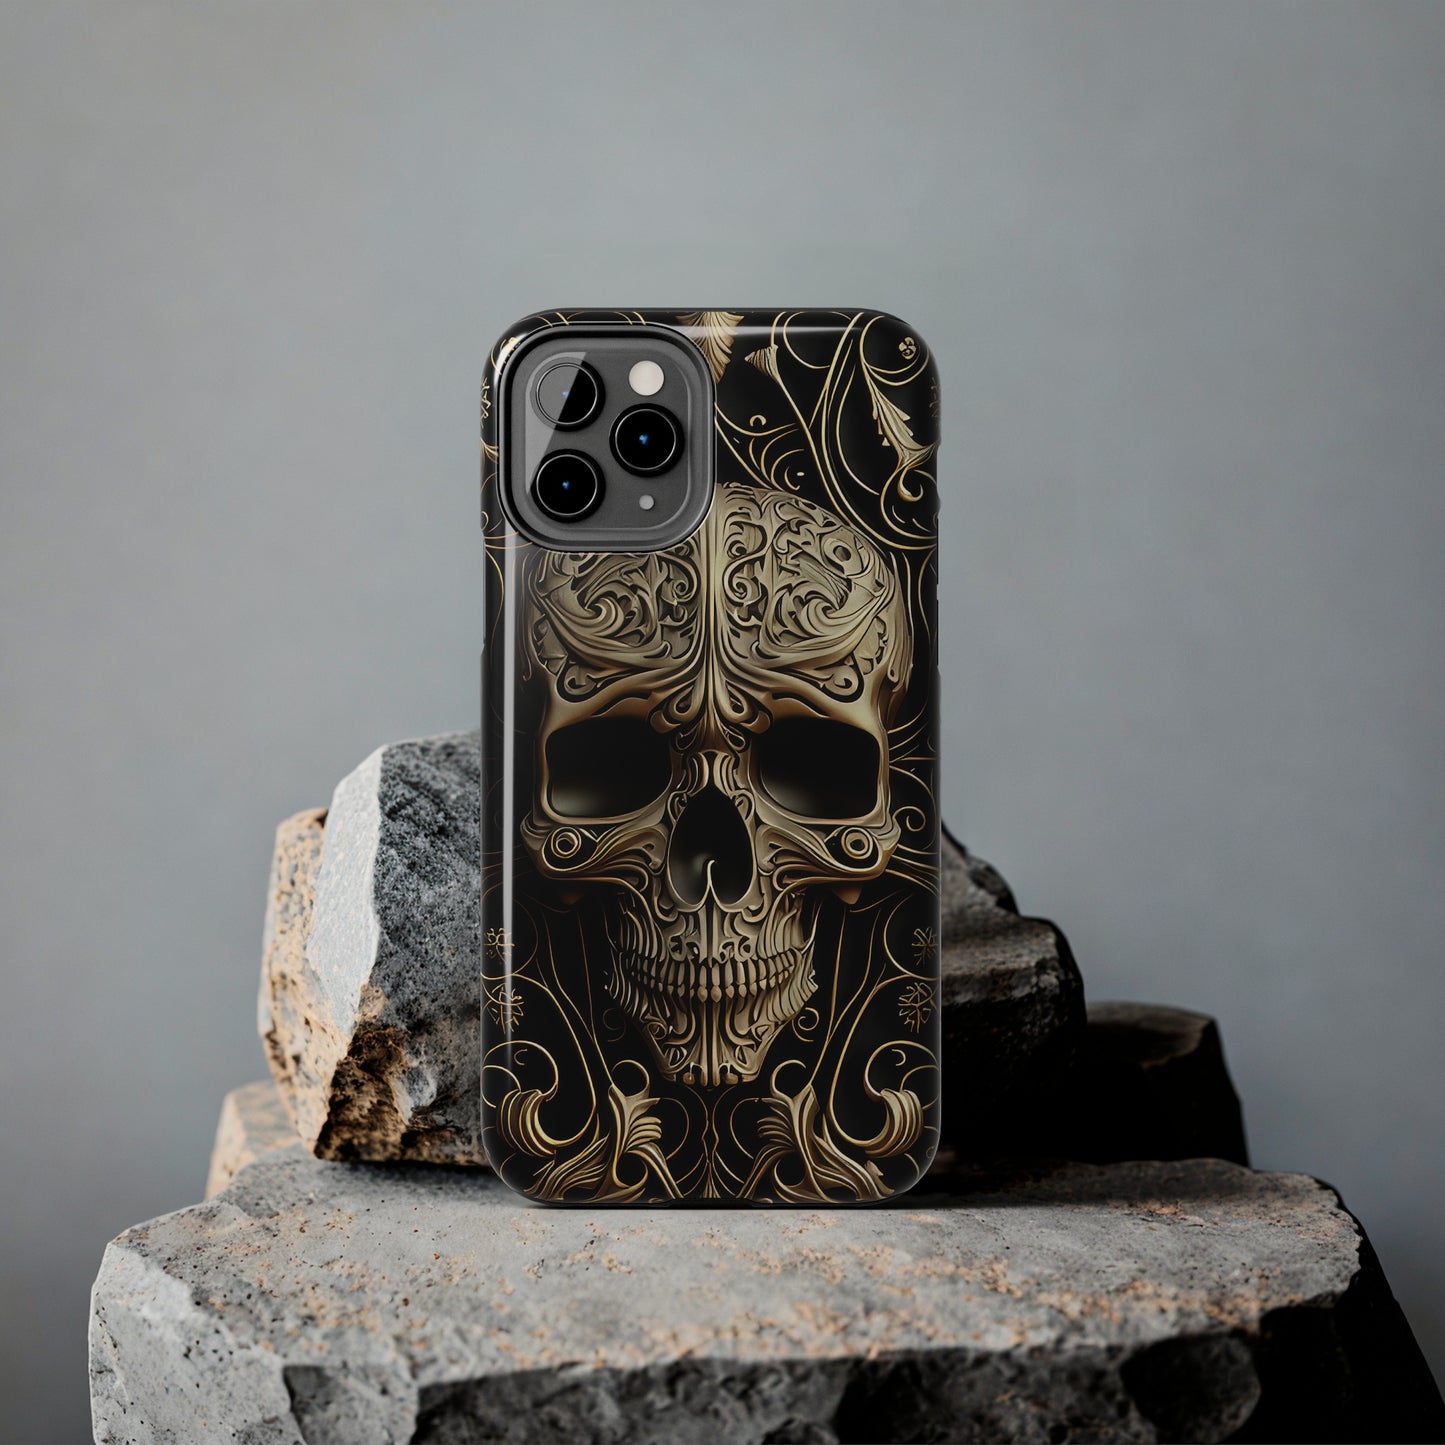 Metallic Chrome Skulls and Classic Designed 8 Tough Phone Cases